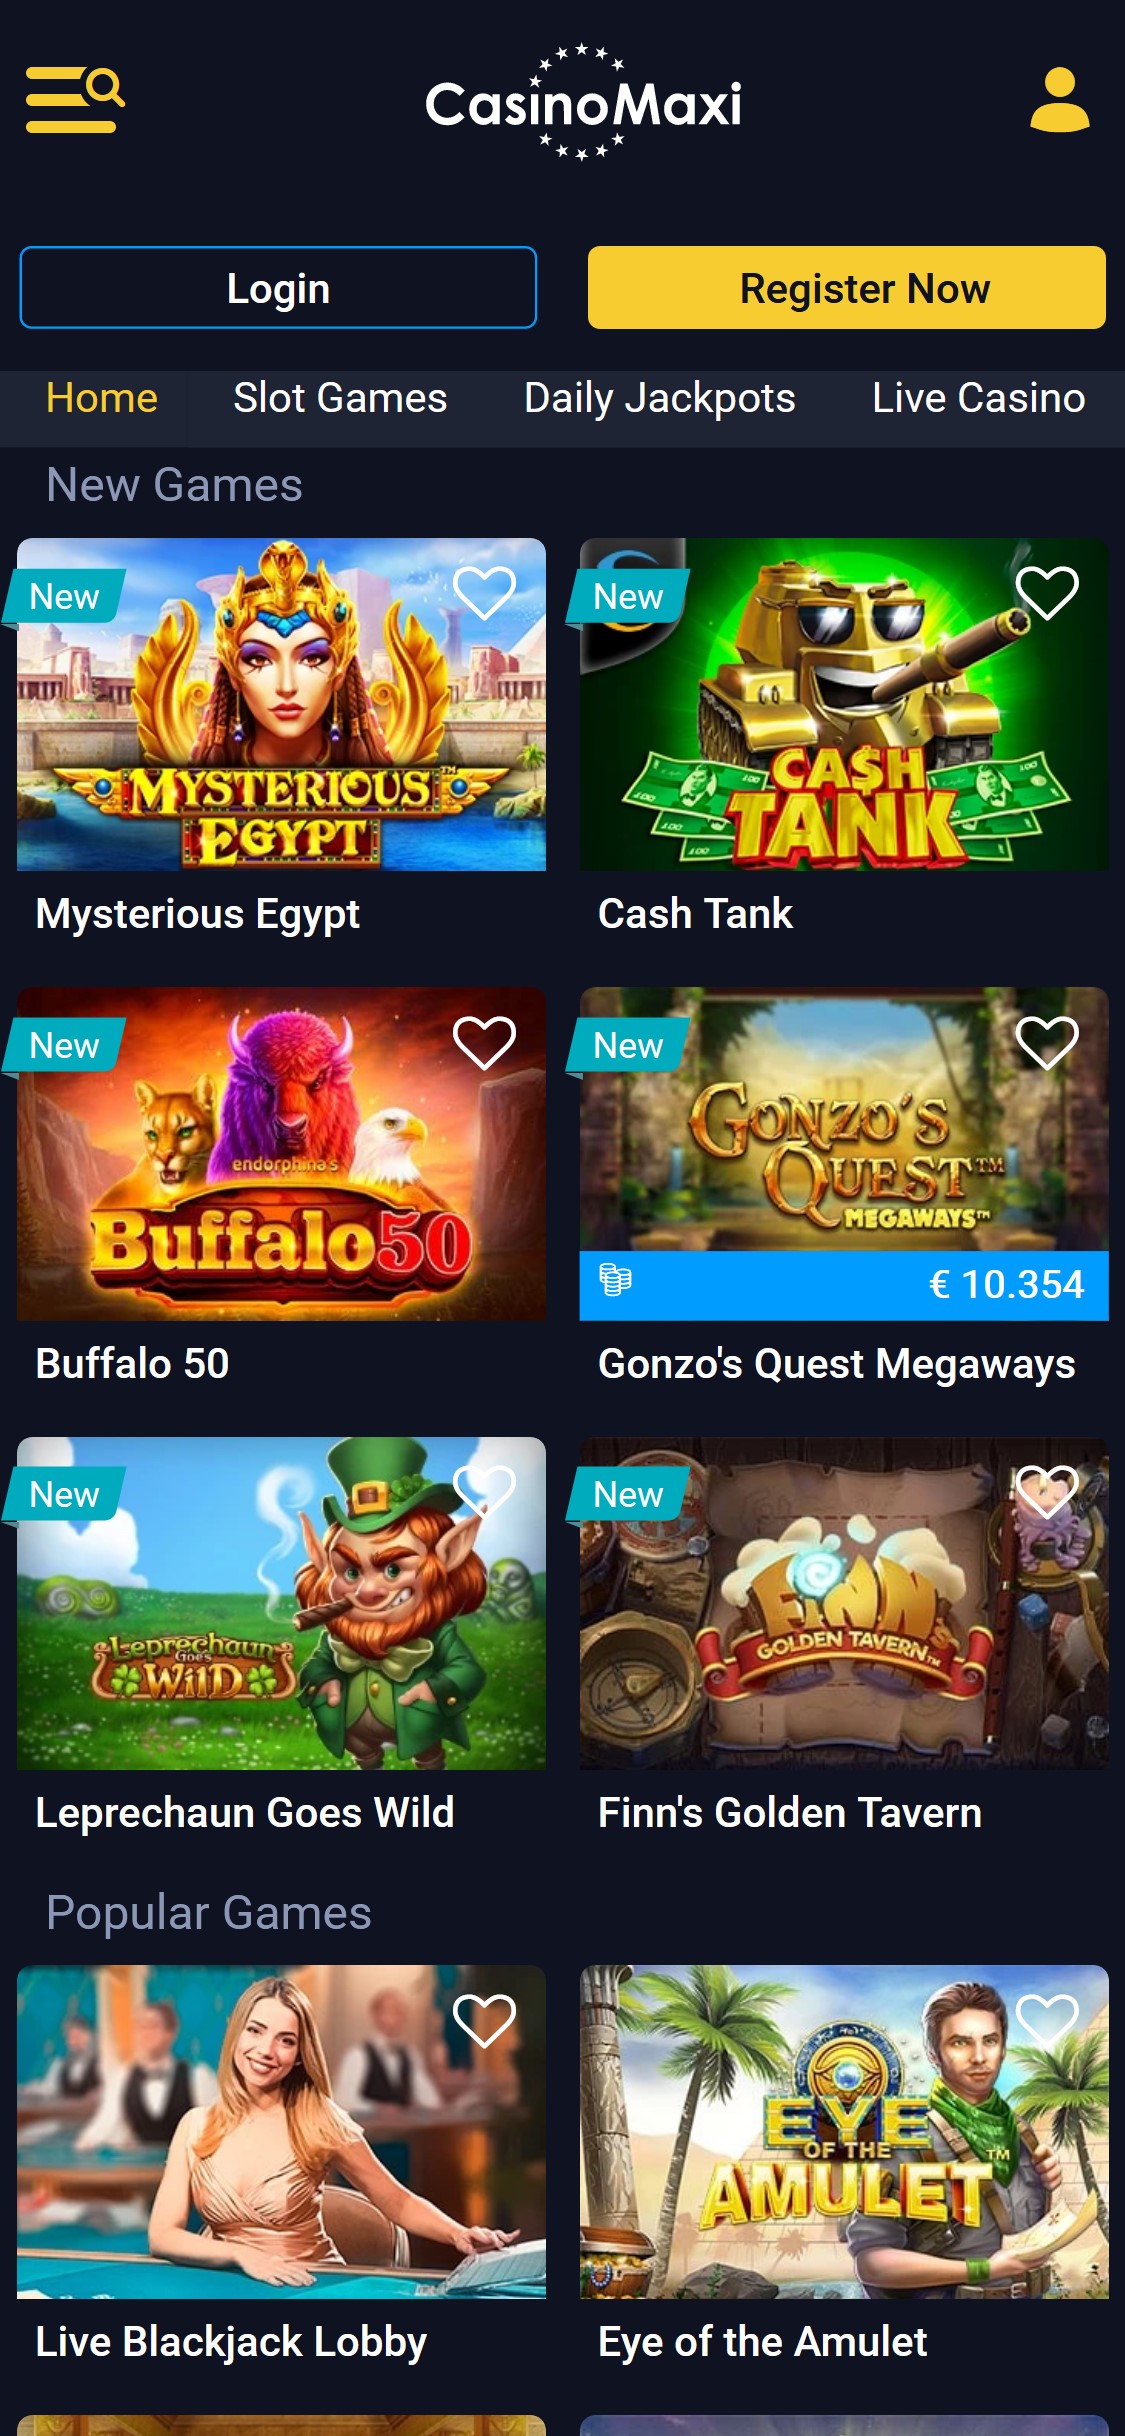 CasinoMaxi EU Mobile Games Review